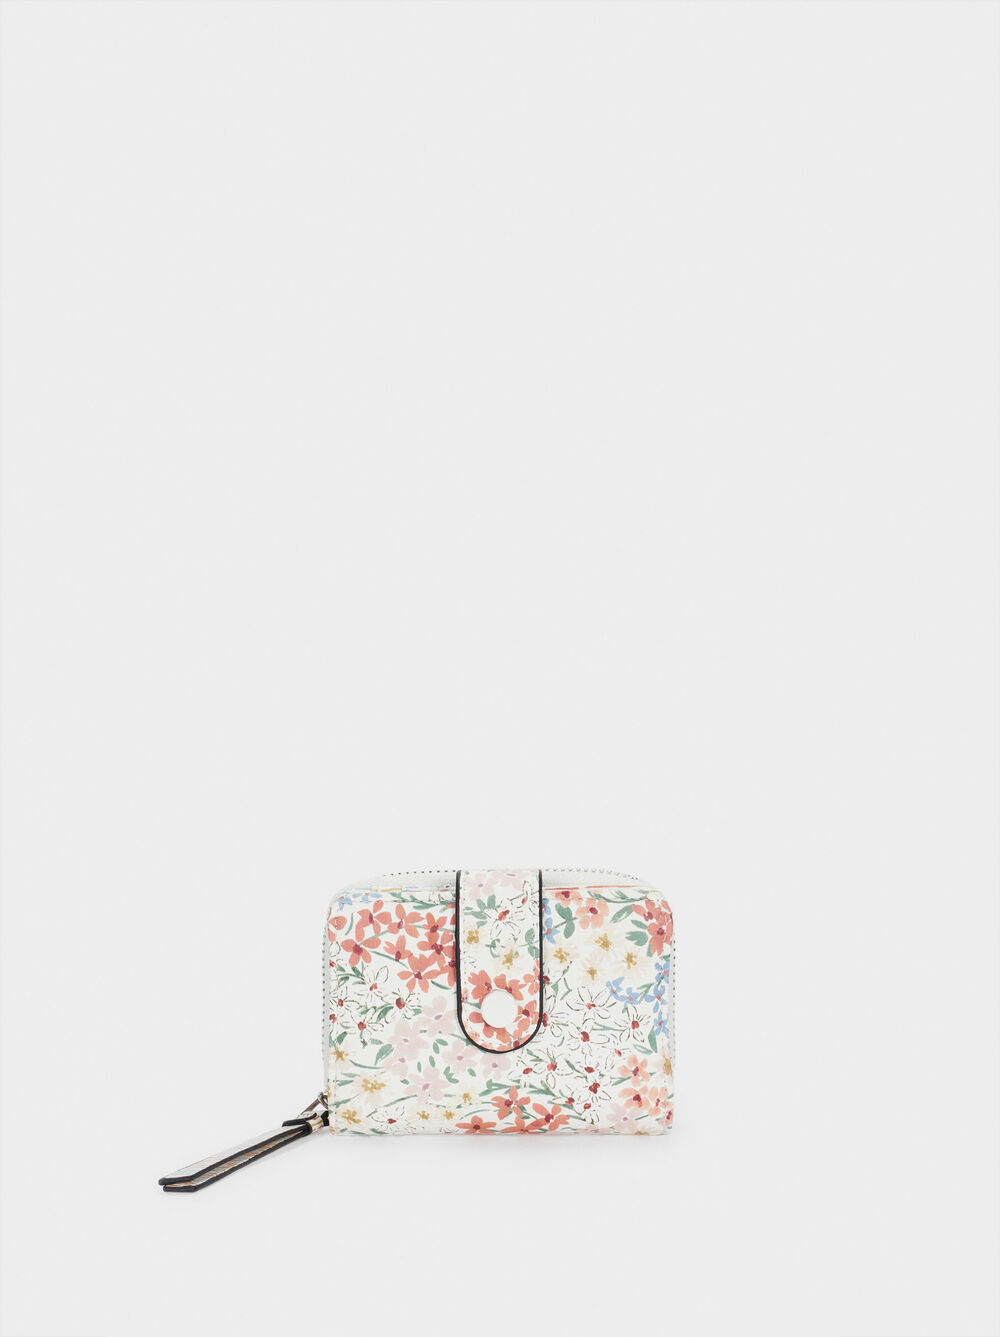 Kompakte Brieftasche Mit Blumenprint